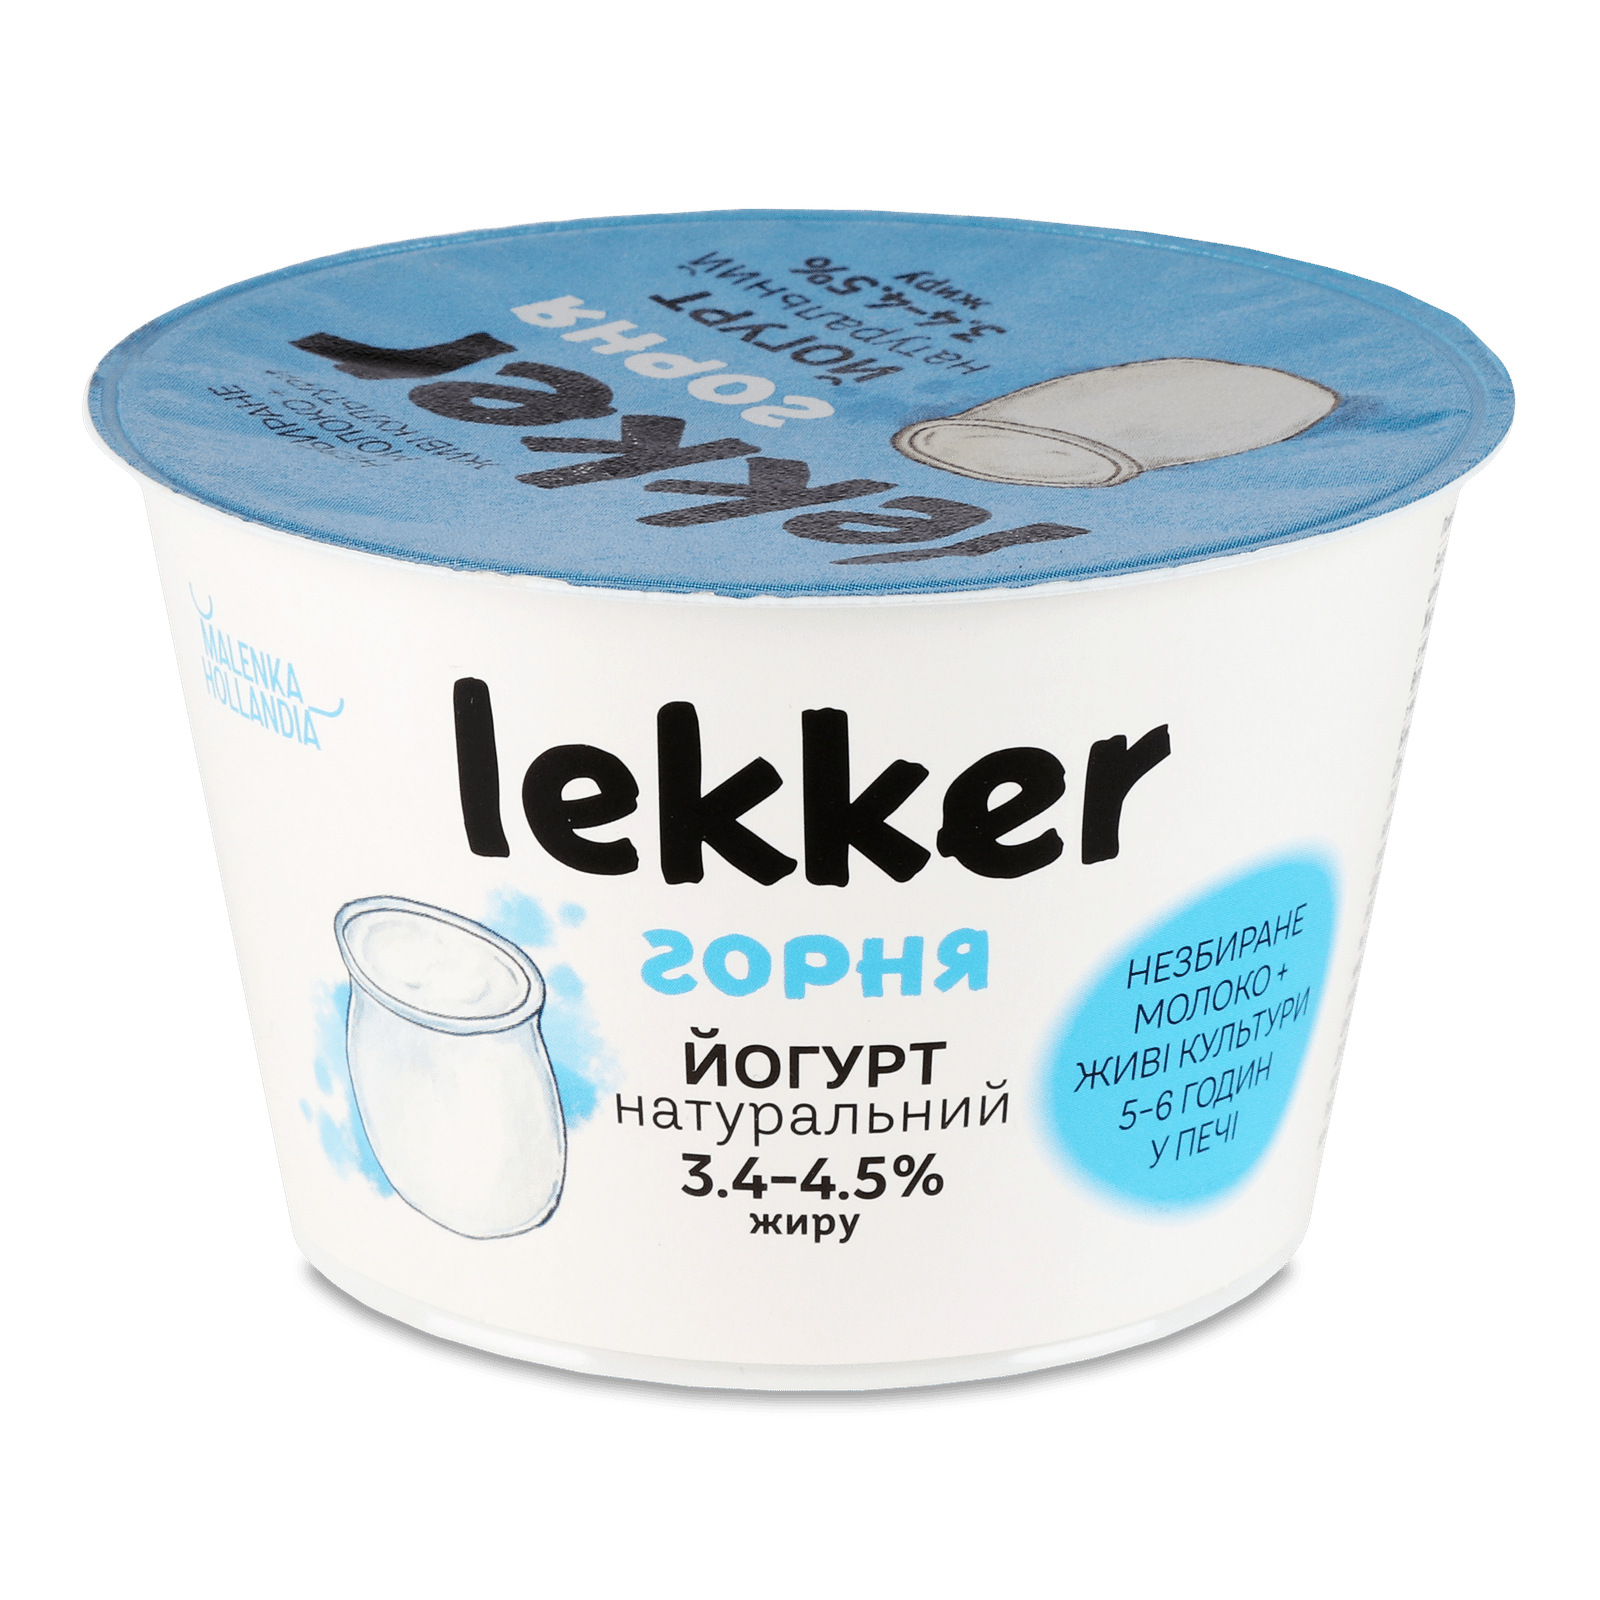 Йогурт Lekker натуральний  3,4 - 4,5% - 1